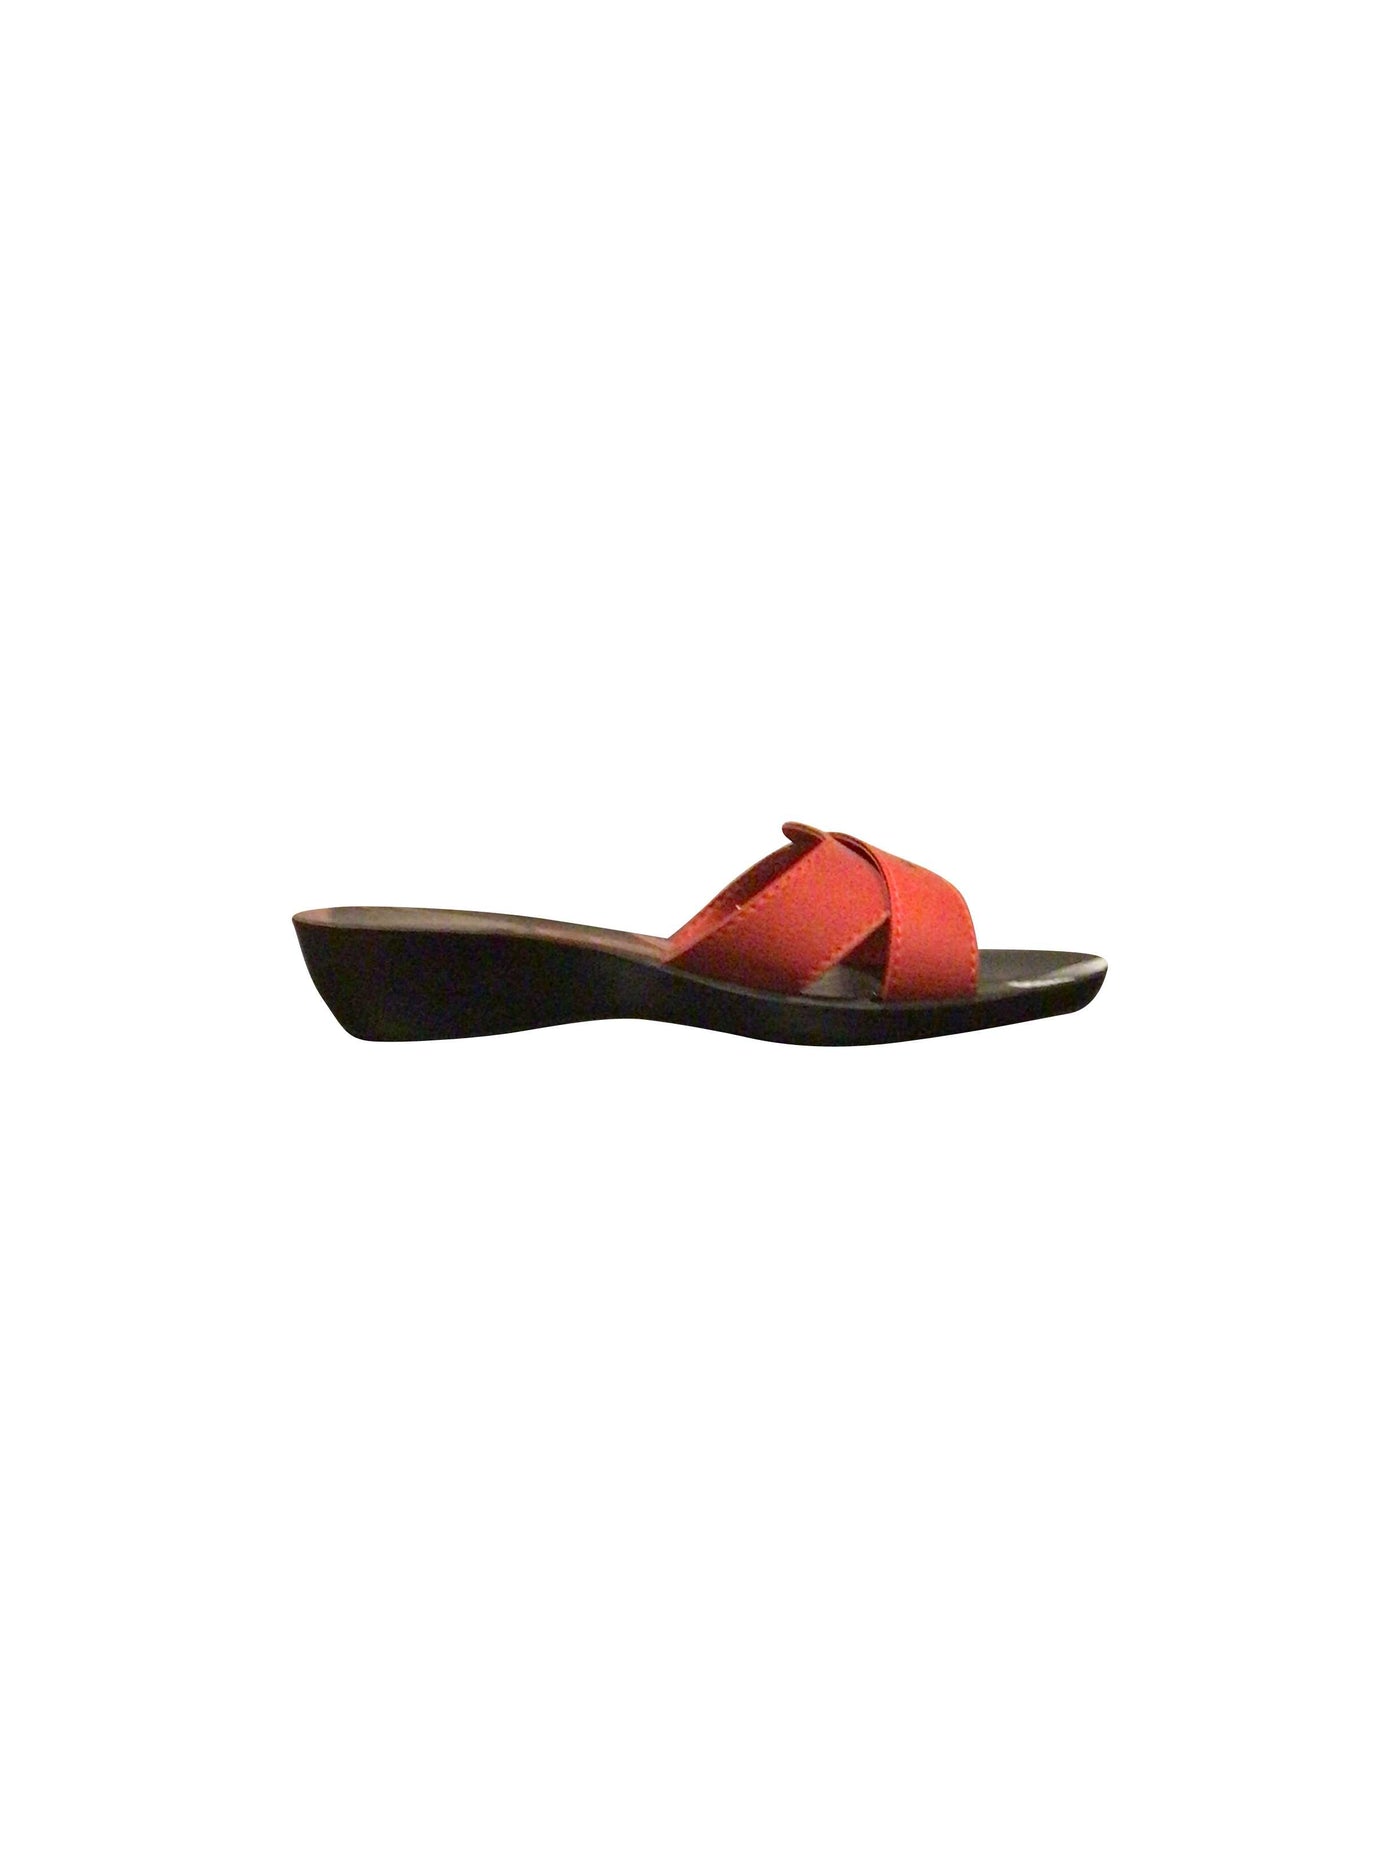 AEROWALK Sandals in Red  -  38  15.50 Koop